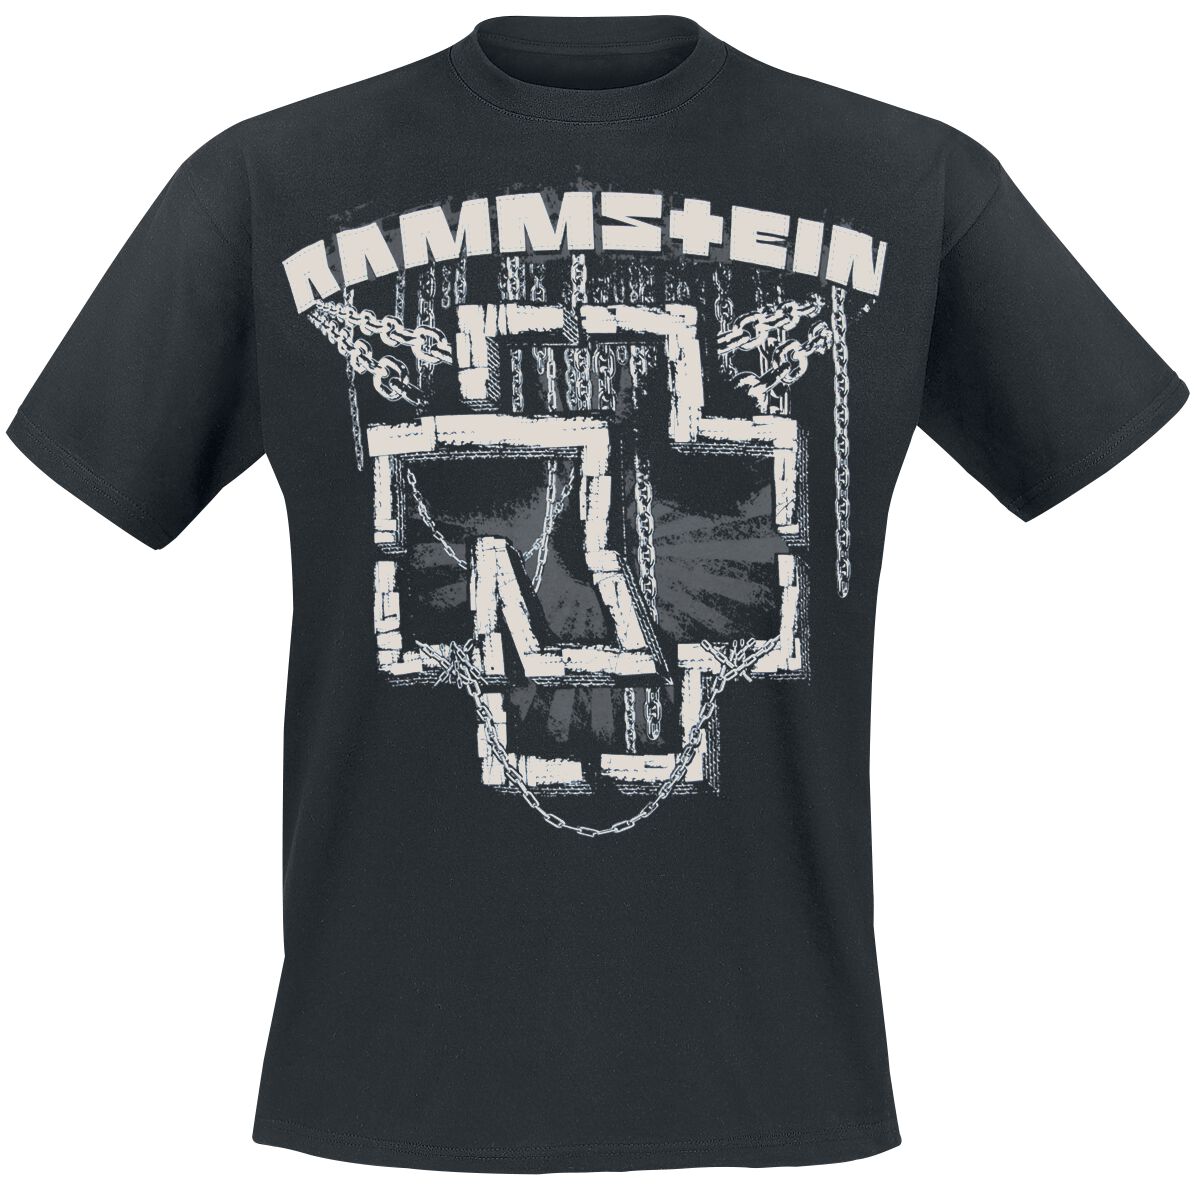 Rammstein T-Shirt - In Ketten - M bis 3XL - für Männer - Größe L - schwarz  - Lizenziertes Merchandise!